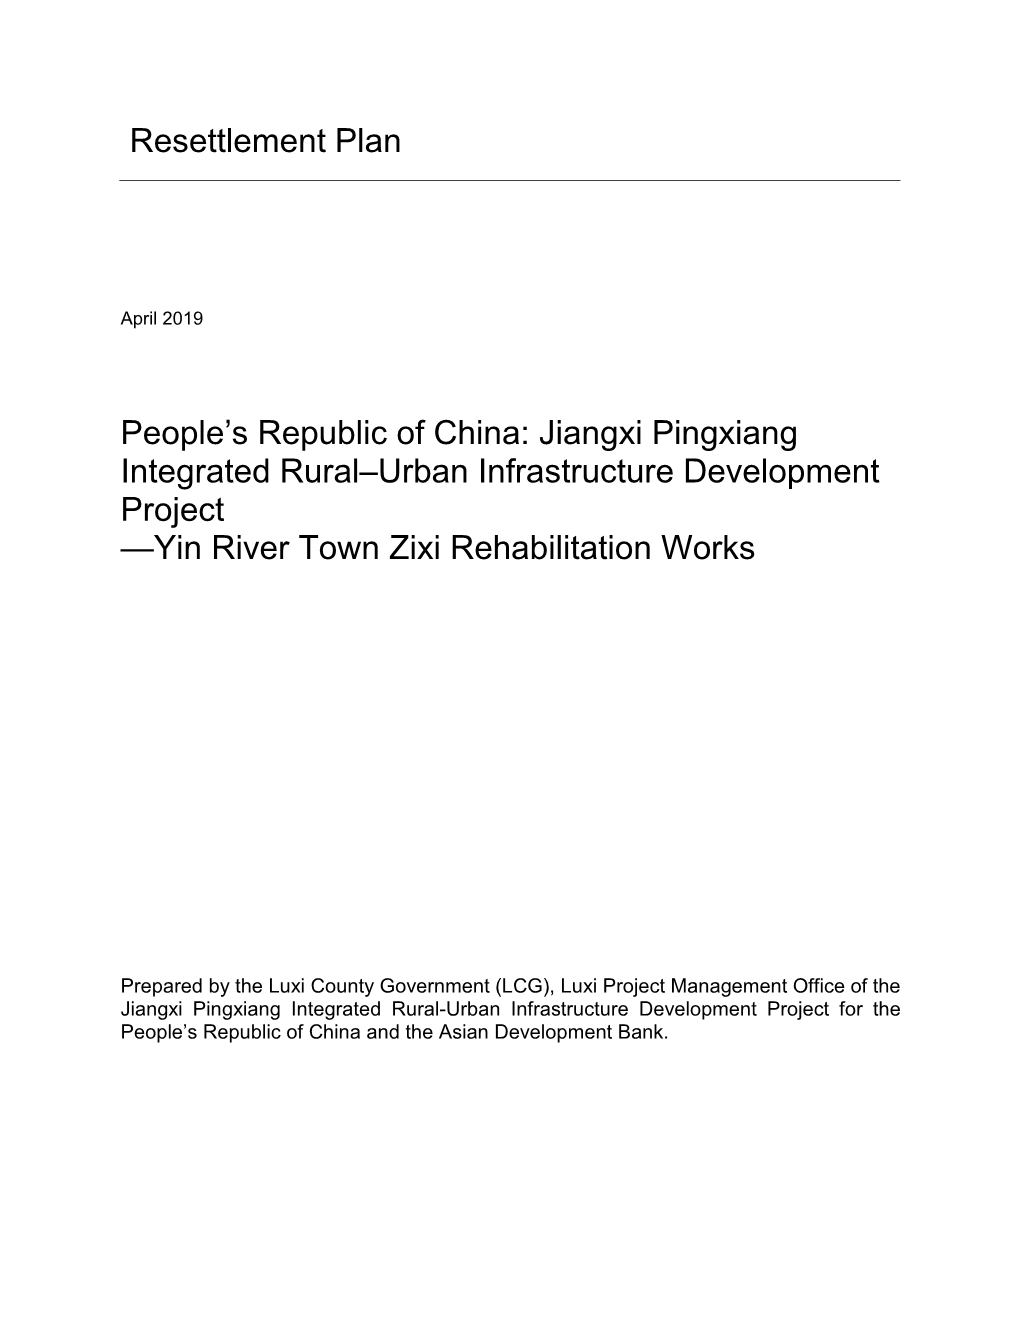 Jiangxi Pingxiang Integrated Rural–Urban Infrastructure Development Project —Yin River Town Zixi Rehabilitation Works